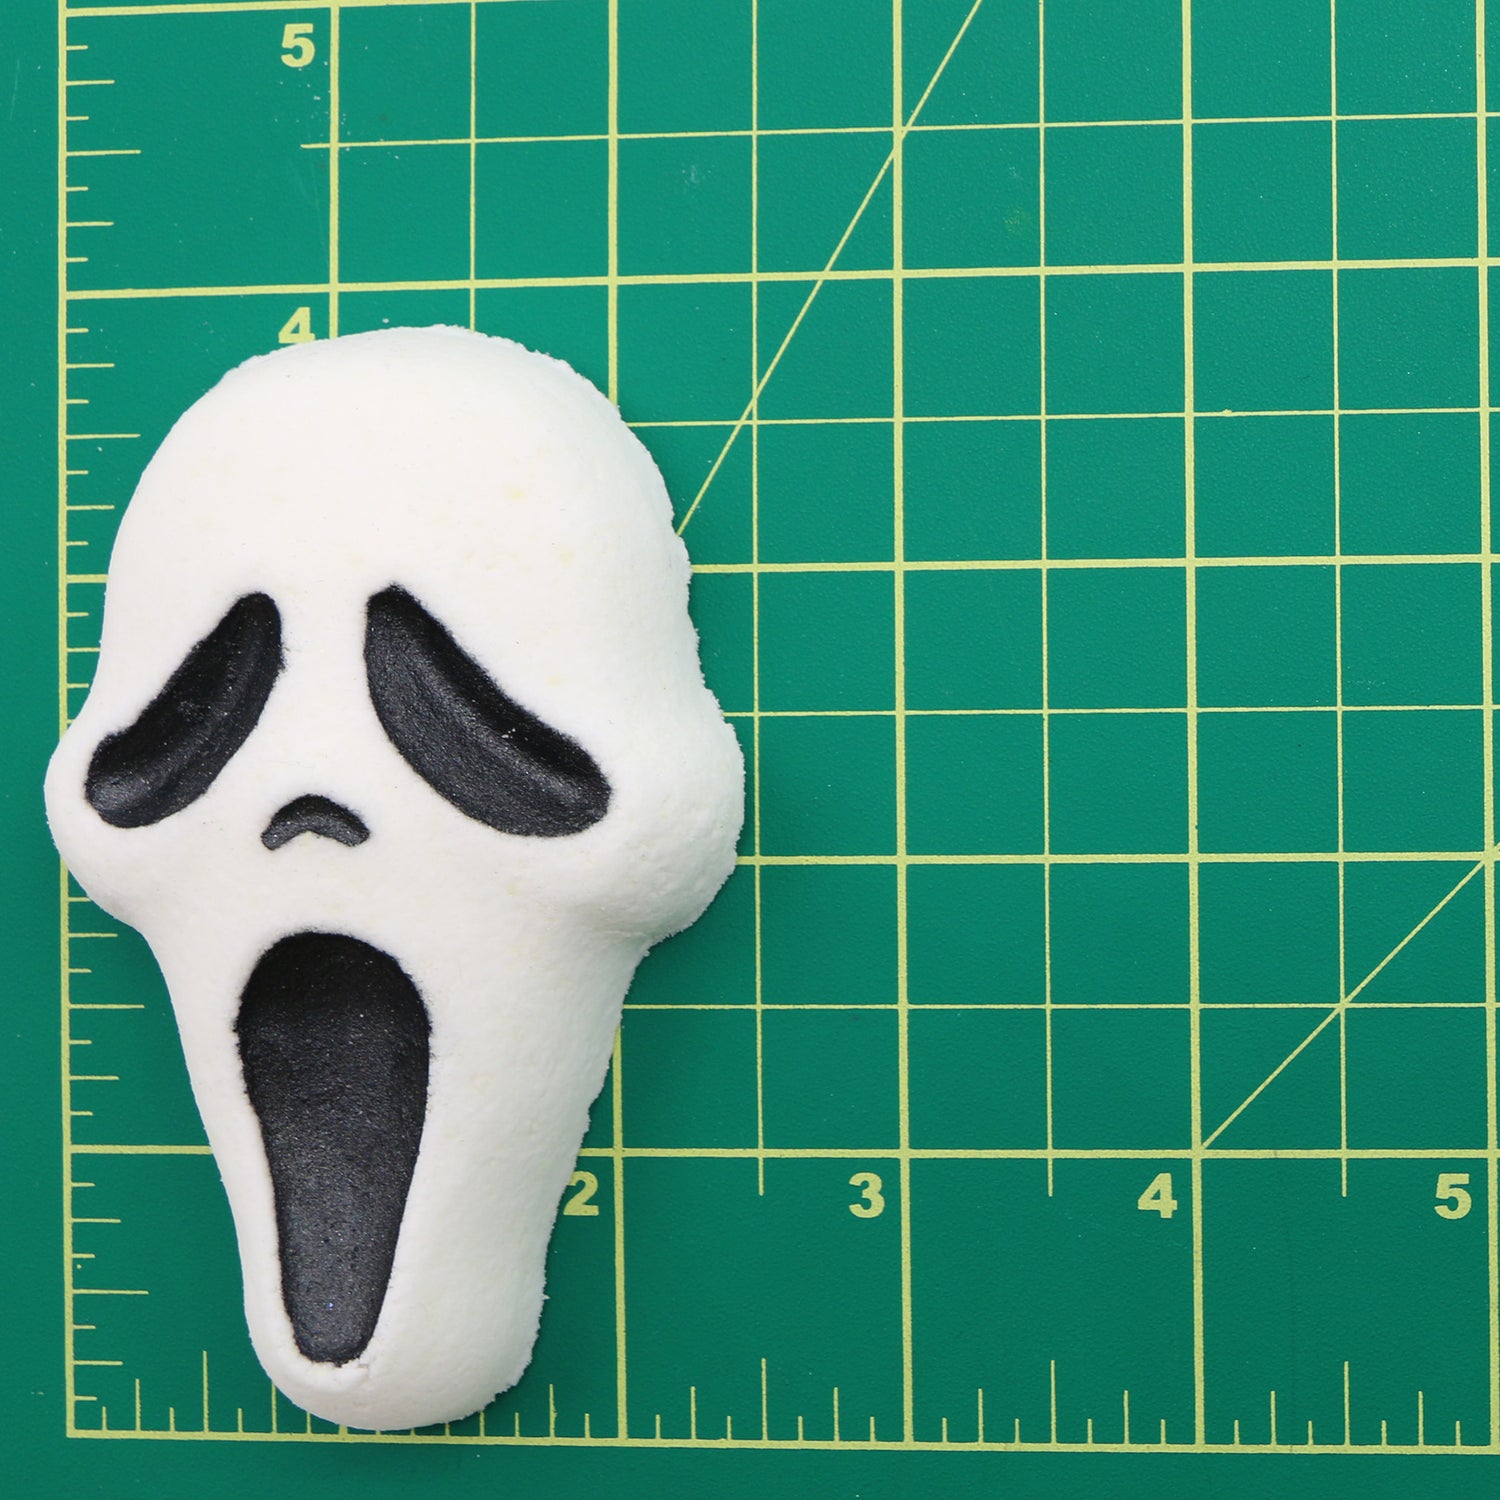 Halloween - Mini Scream